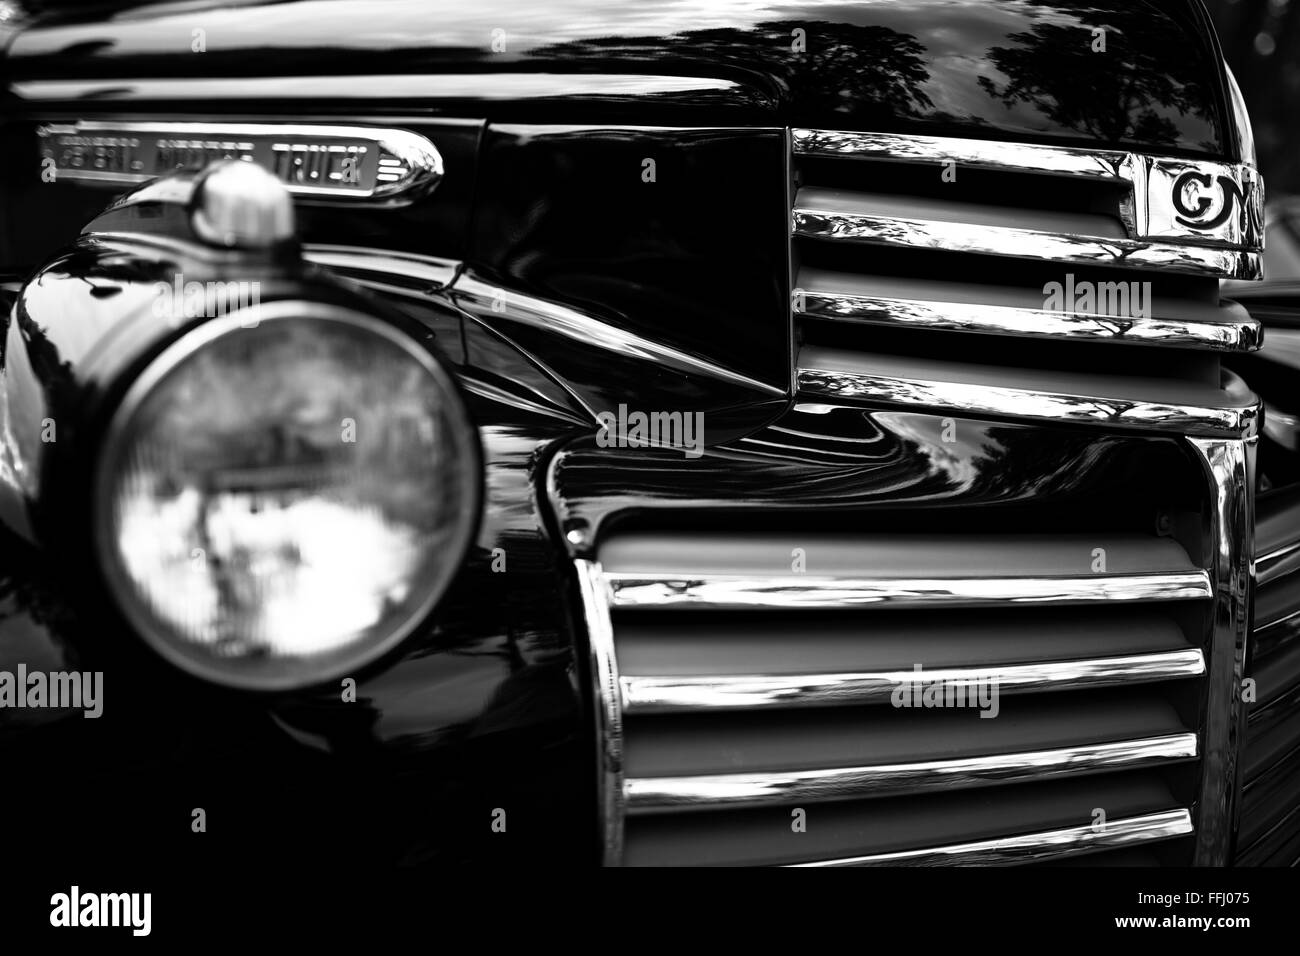 Dettaglio Immagini monocromatiche di spettacolarmente restaurata classic cars. Foto Stock